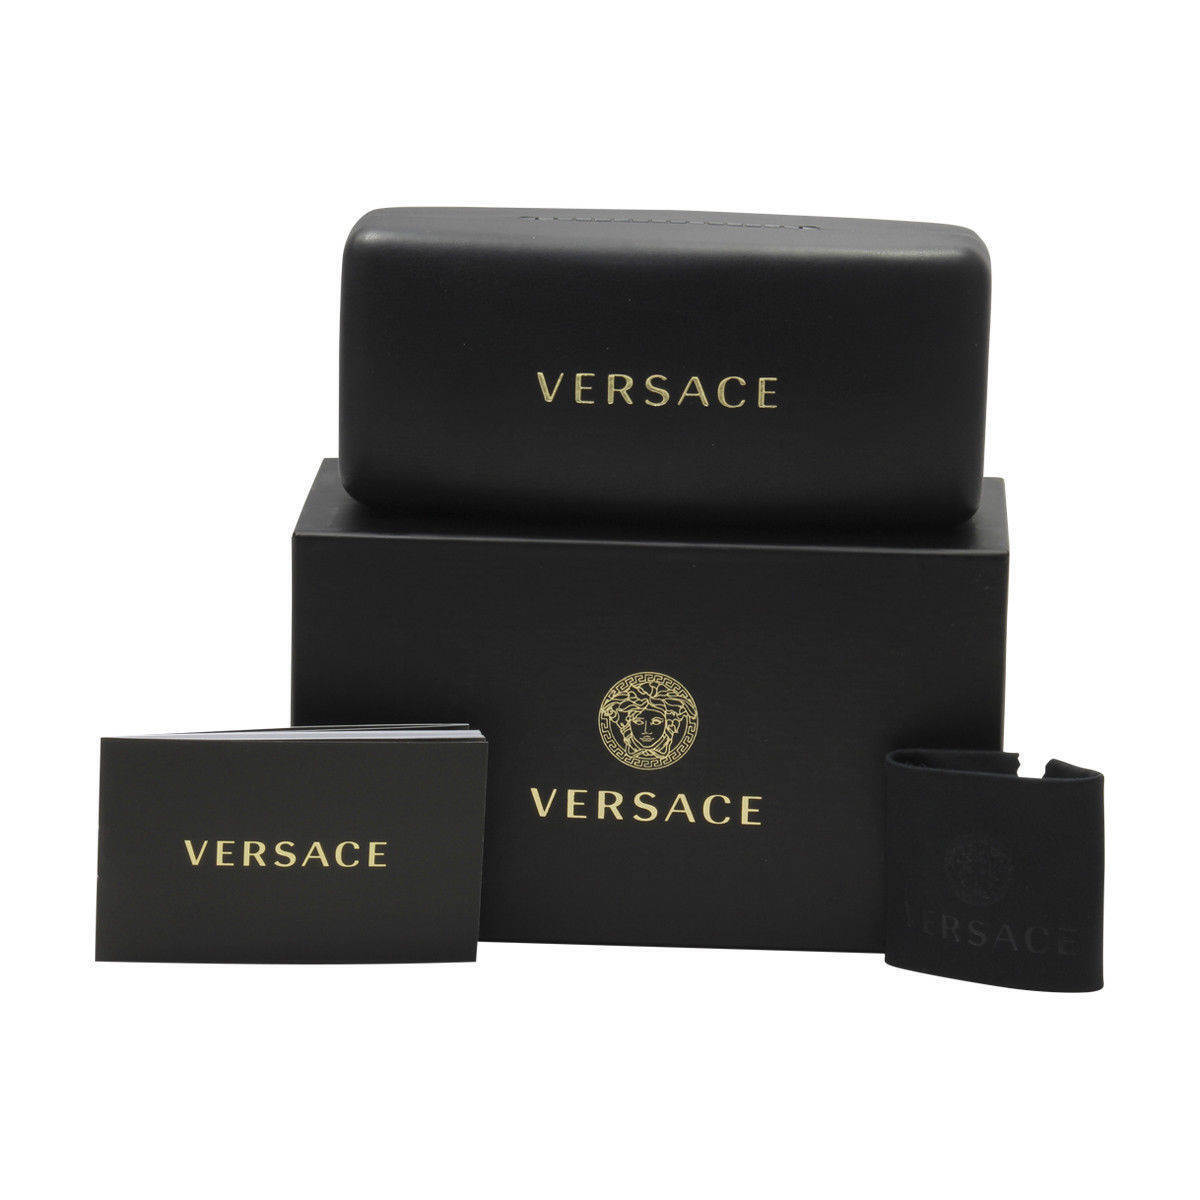 Versace VE3333D-108-56  New Eyeglasses